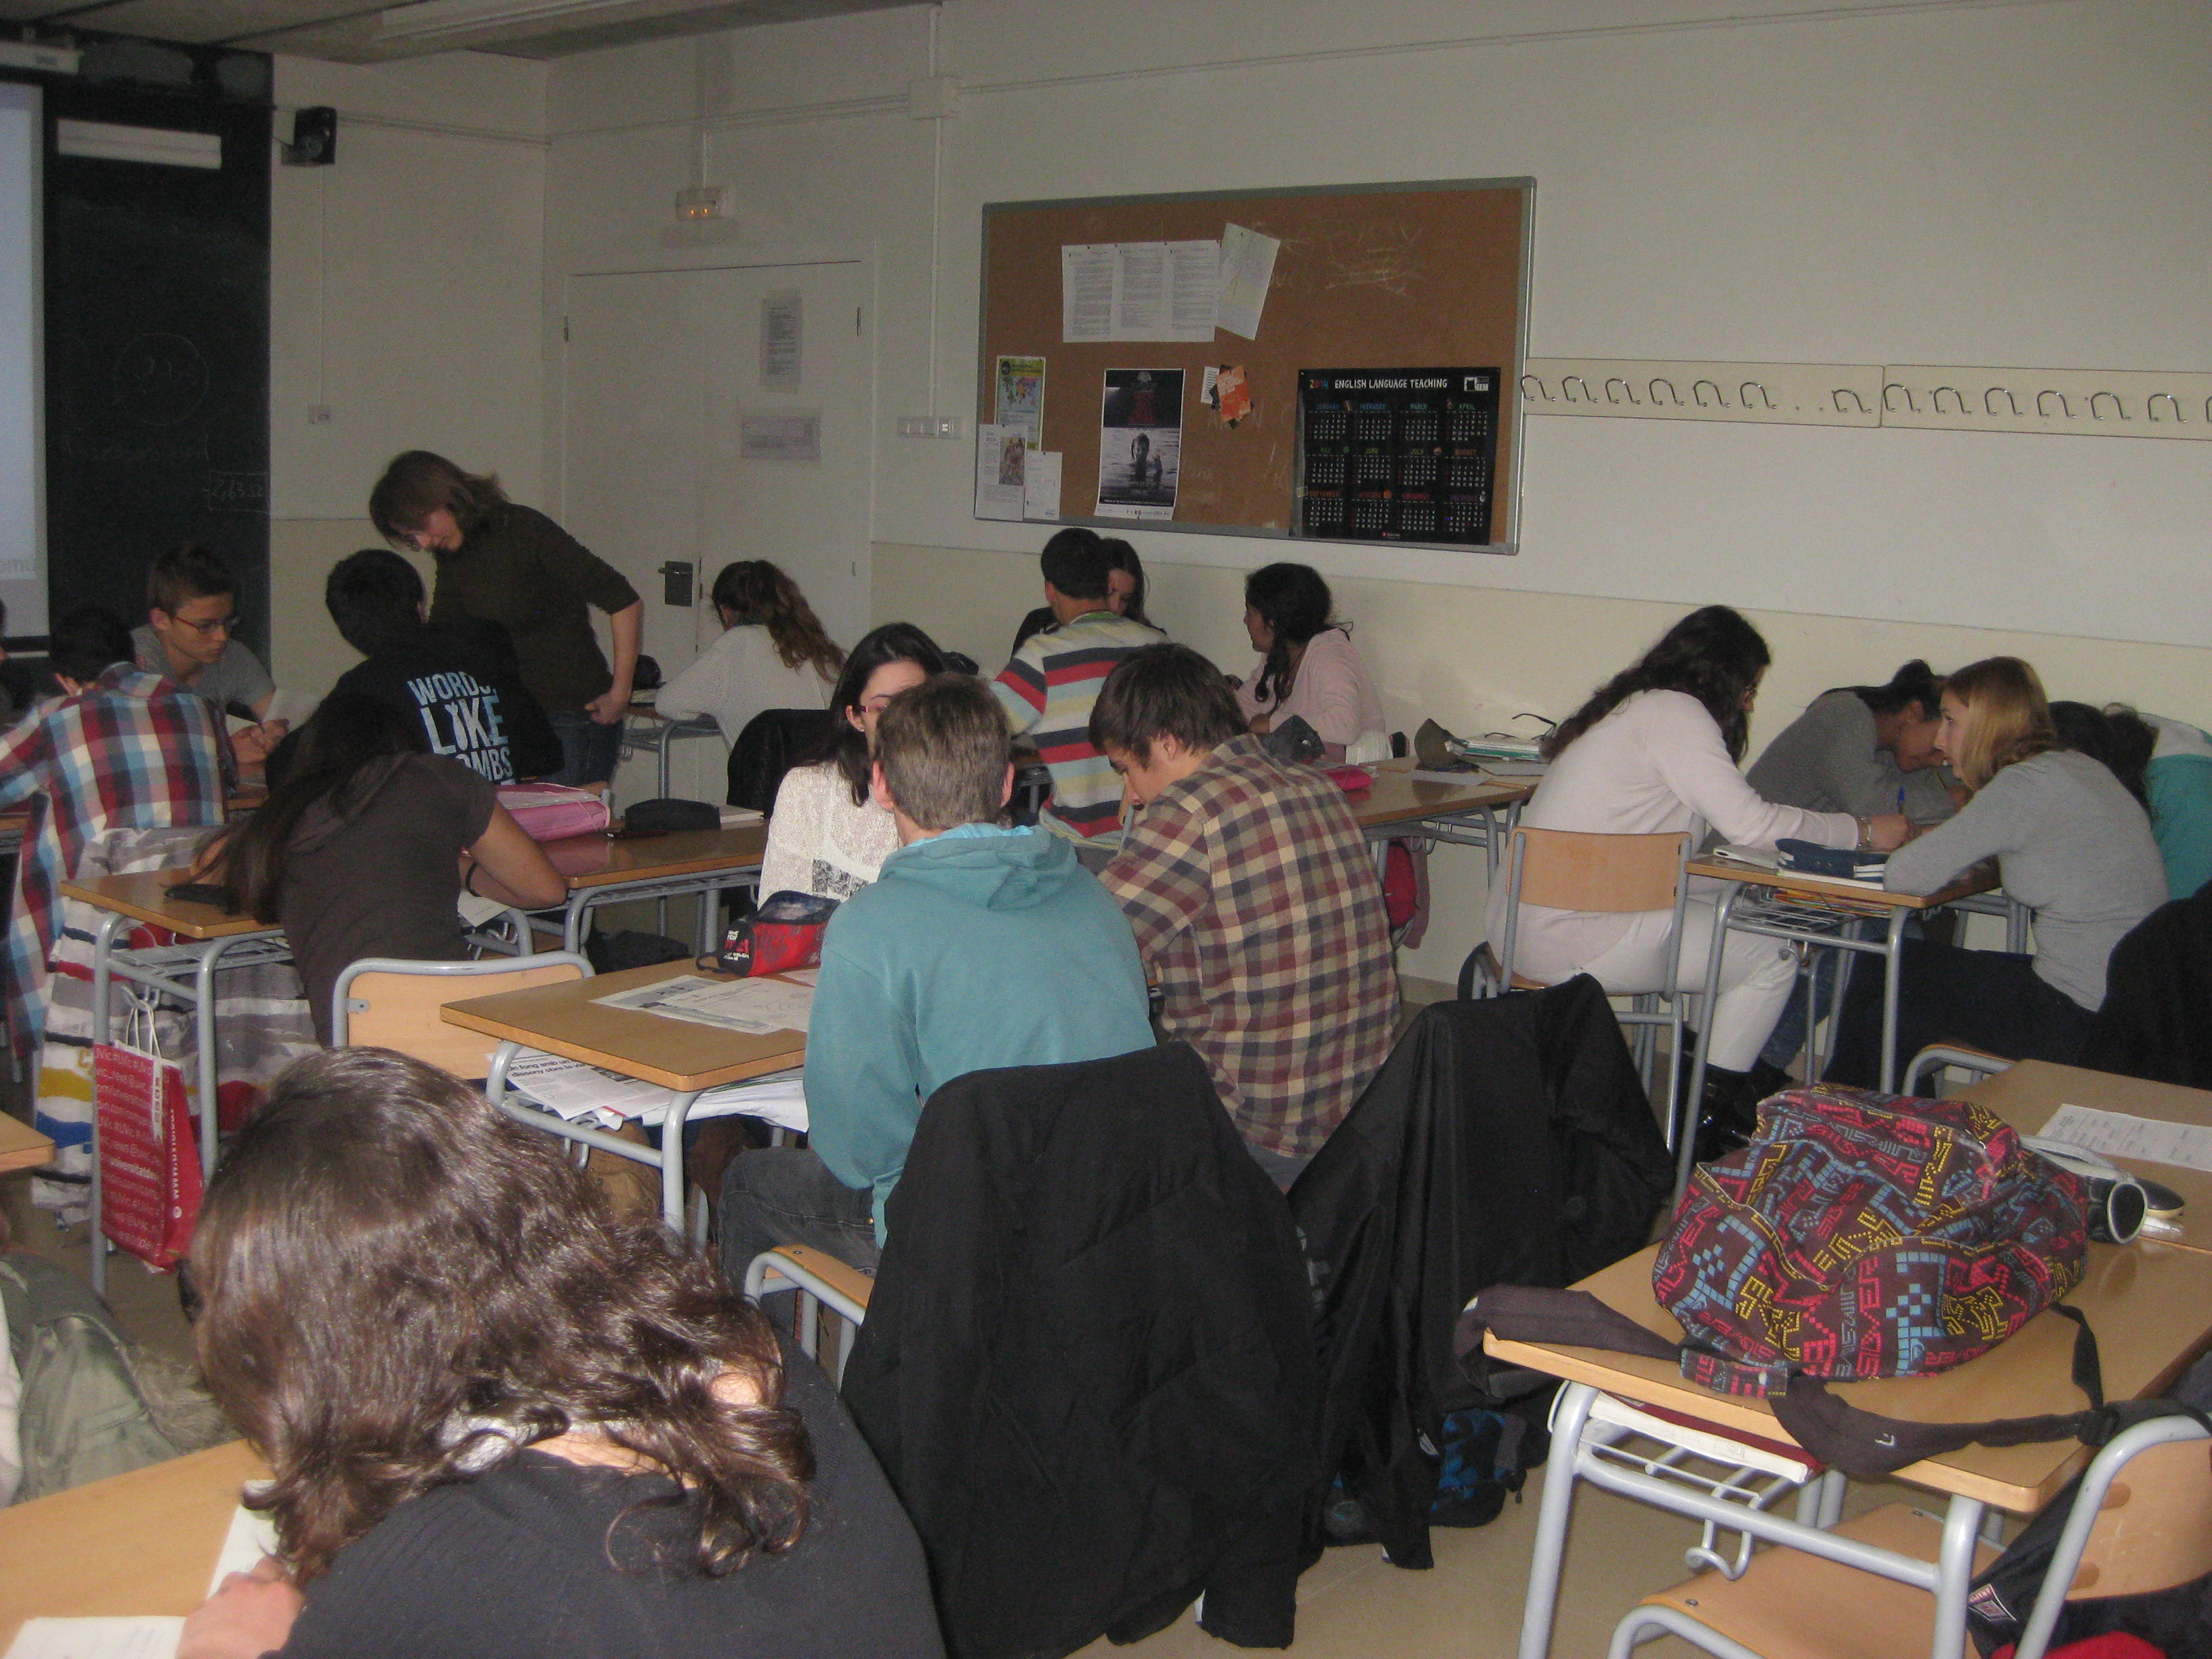 Suport als treballs de recerca d'alumnes de batxillerat de la ciutat de Barcelona